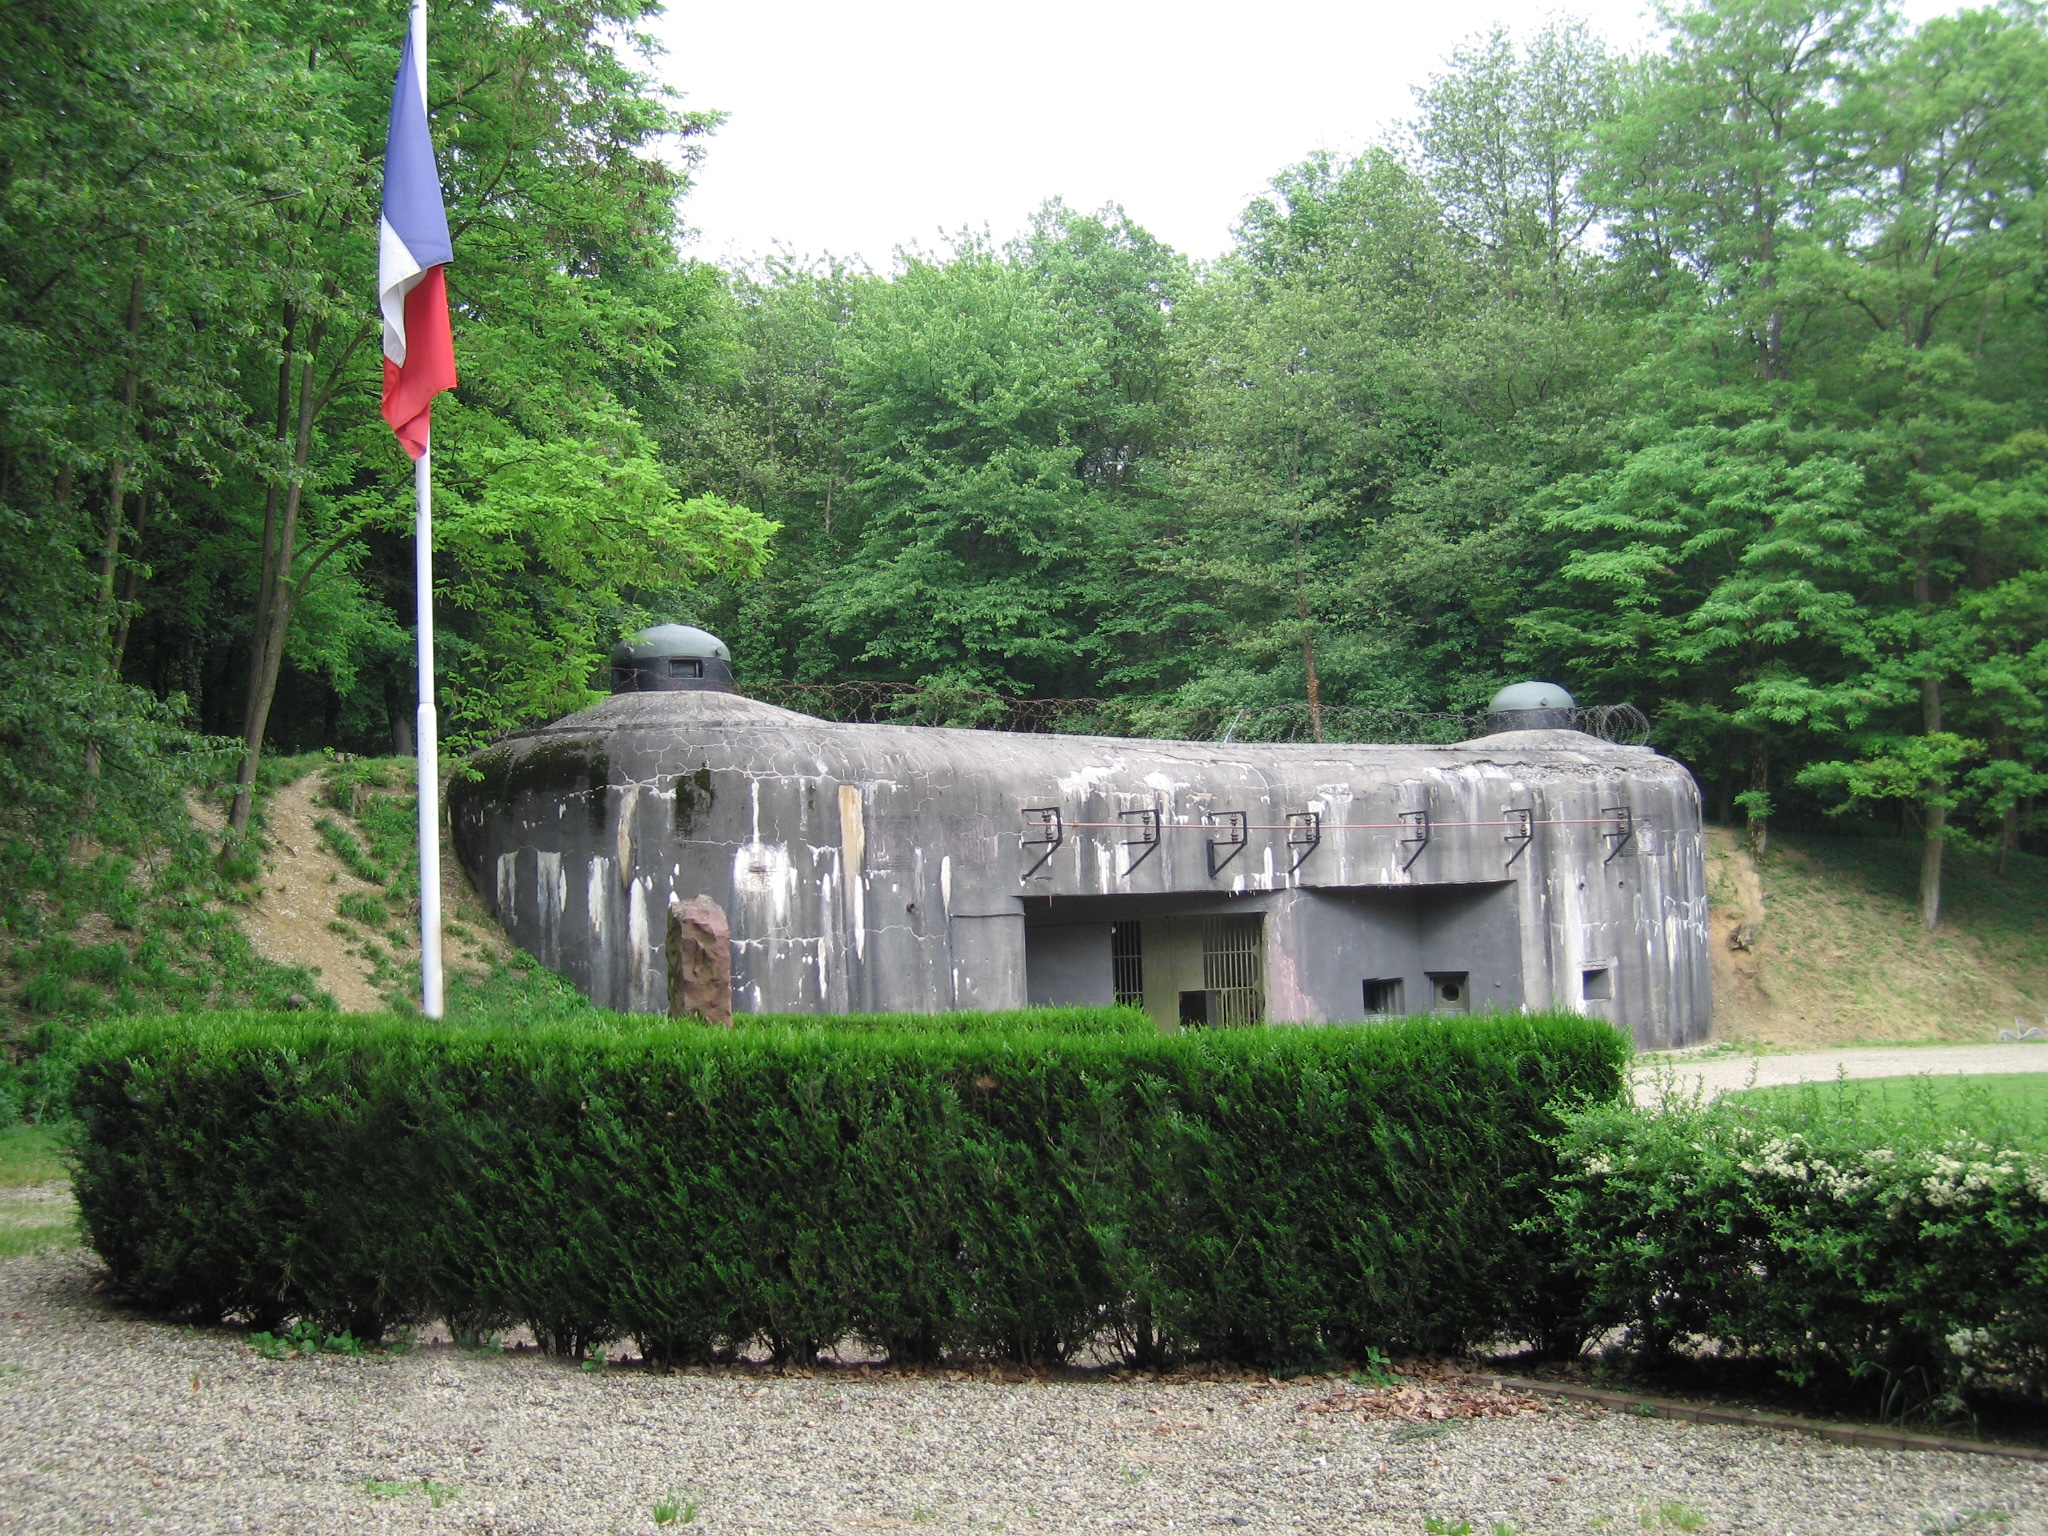 L'entrée des munitions de l'Ouvrage Schoenenbourg le long de la Ligne Maginot en Alsace.
Wiki commons